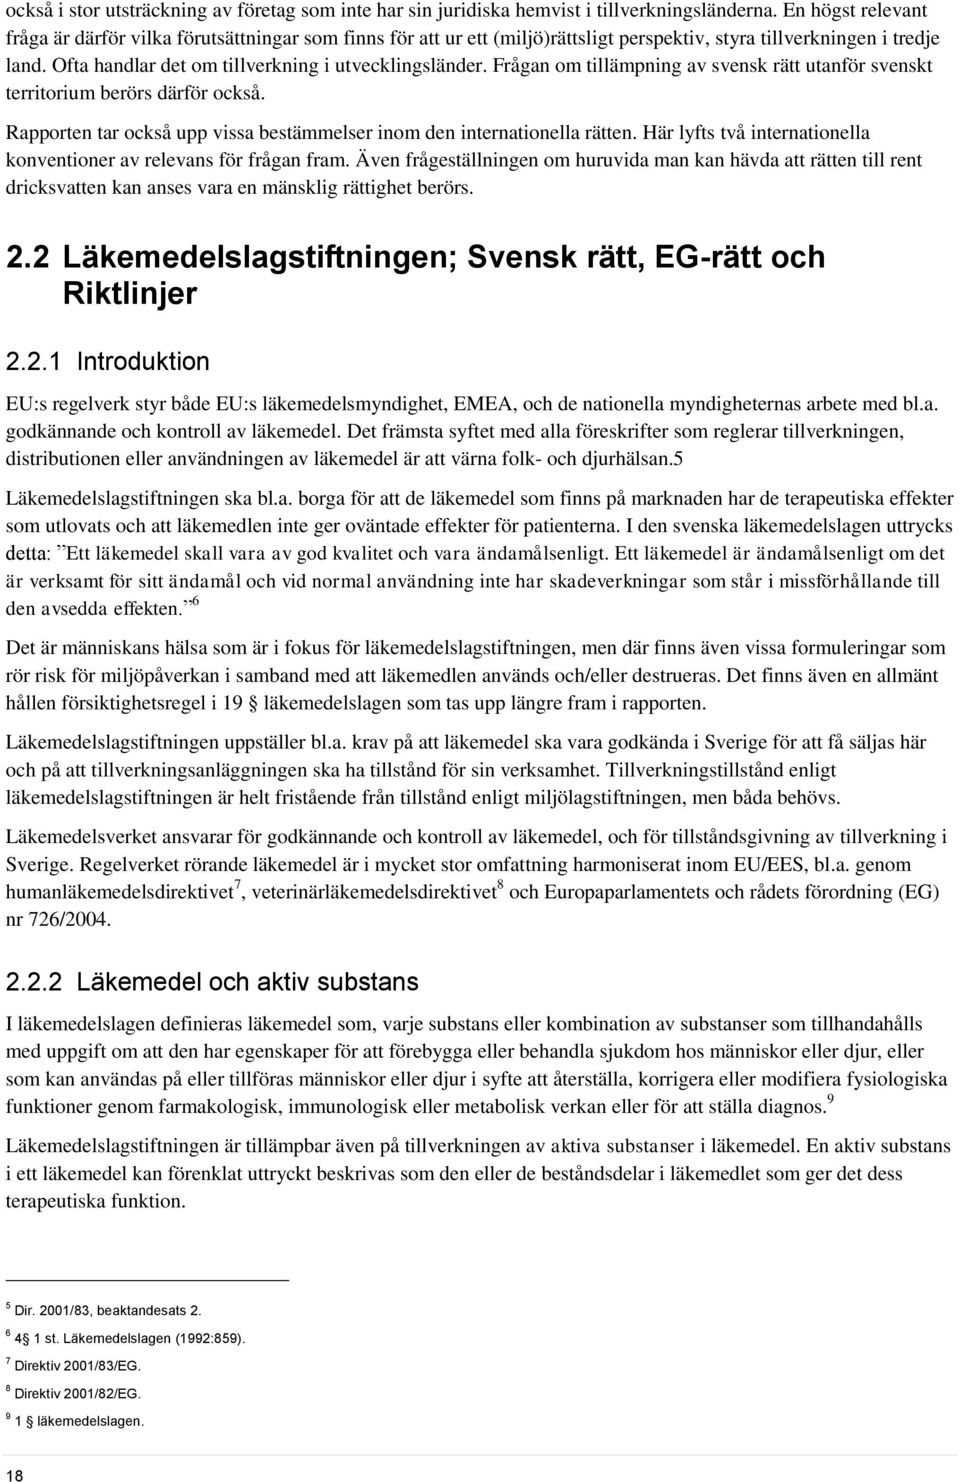 Frågan om tillämpning av svensk rätt utanför svenskt territorium berörs därför också. Rapporten tar också upp vissa bestämmelser inom den internationella rätten.